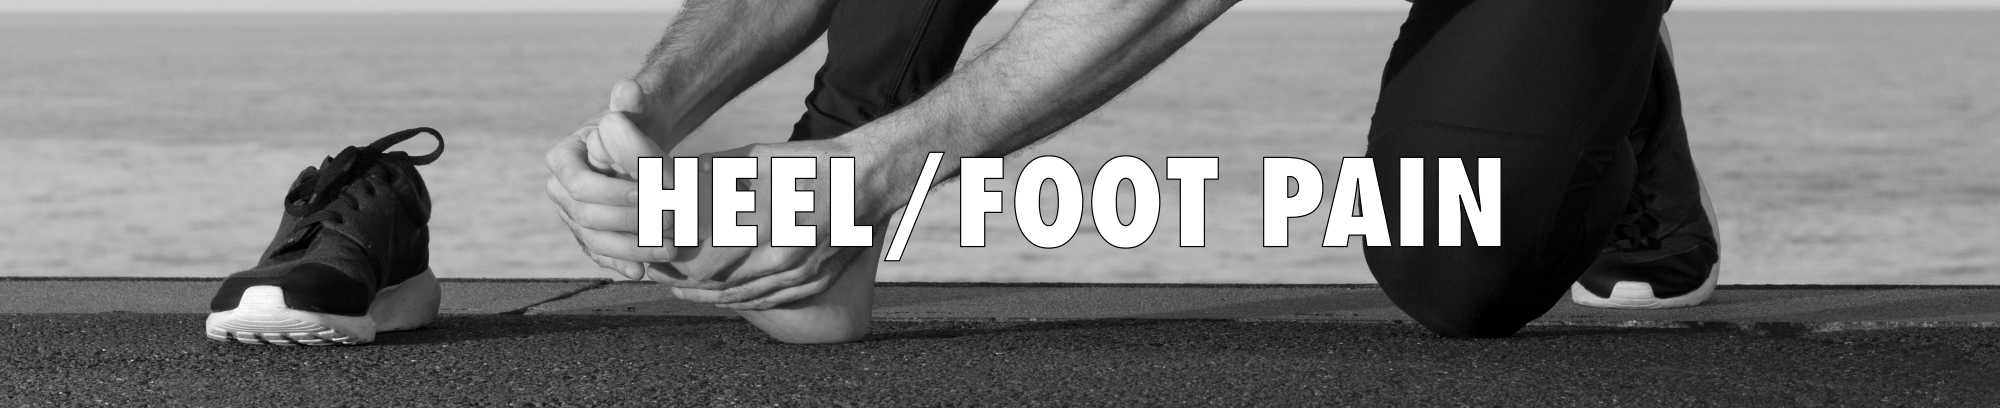 Heel/Foot Pain